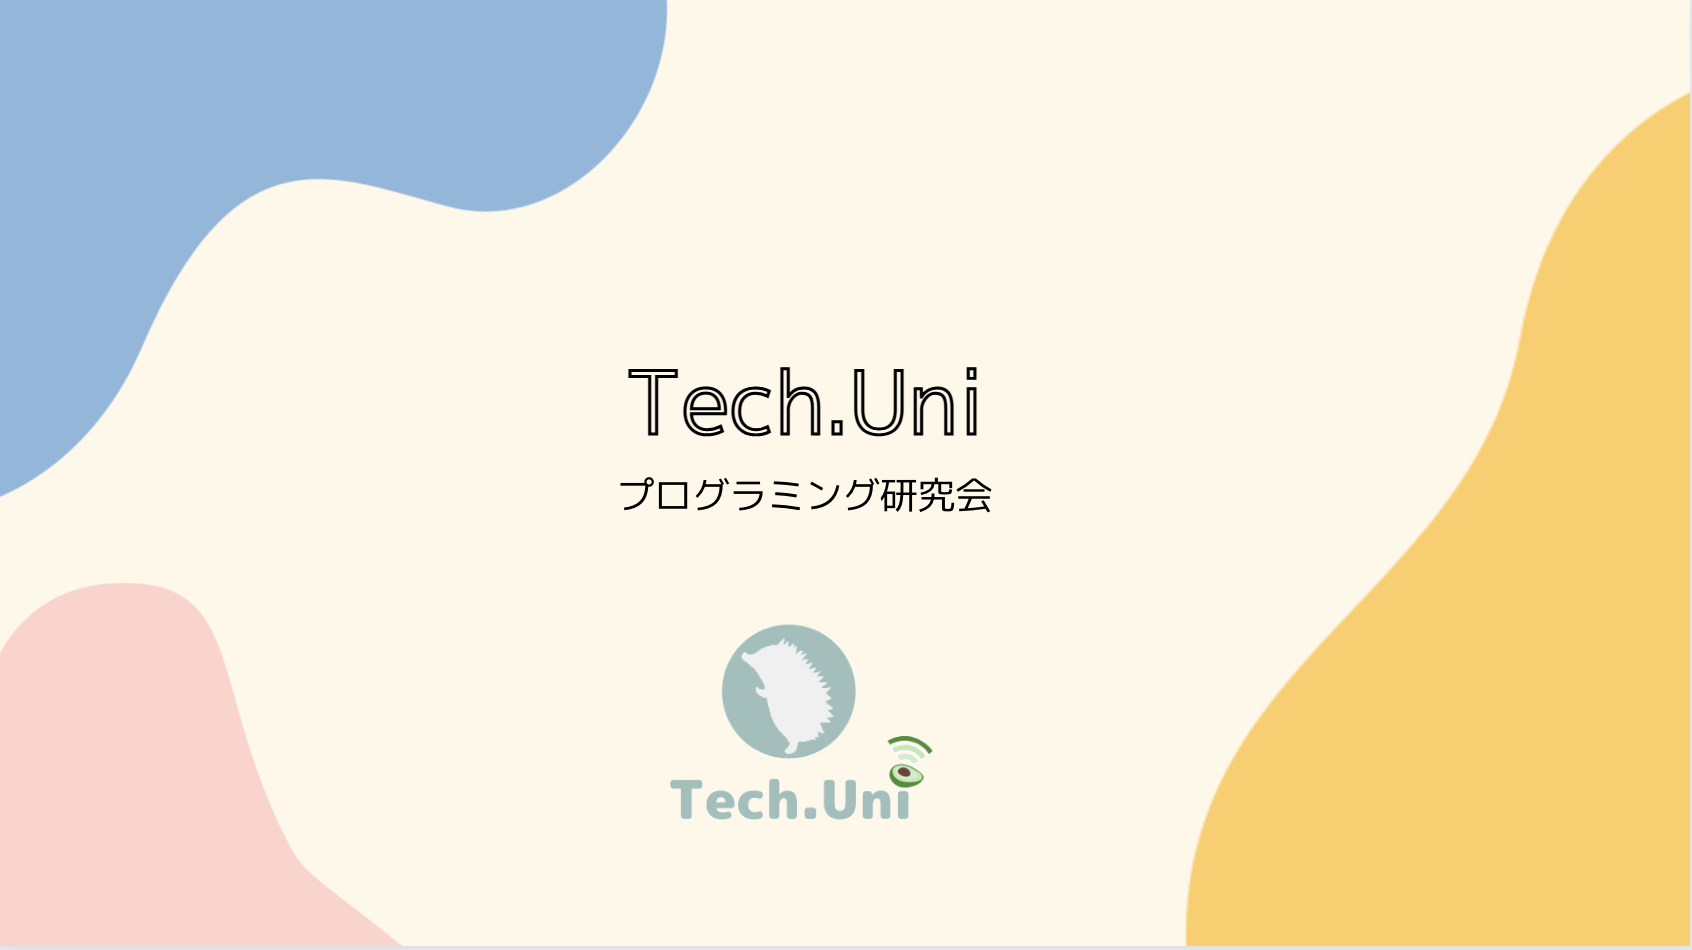 Tech.Uni